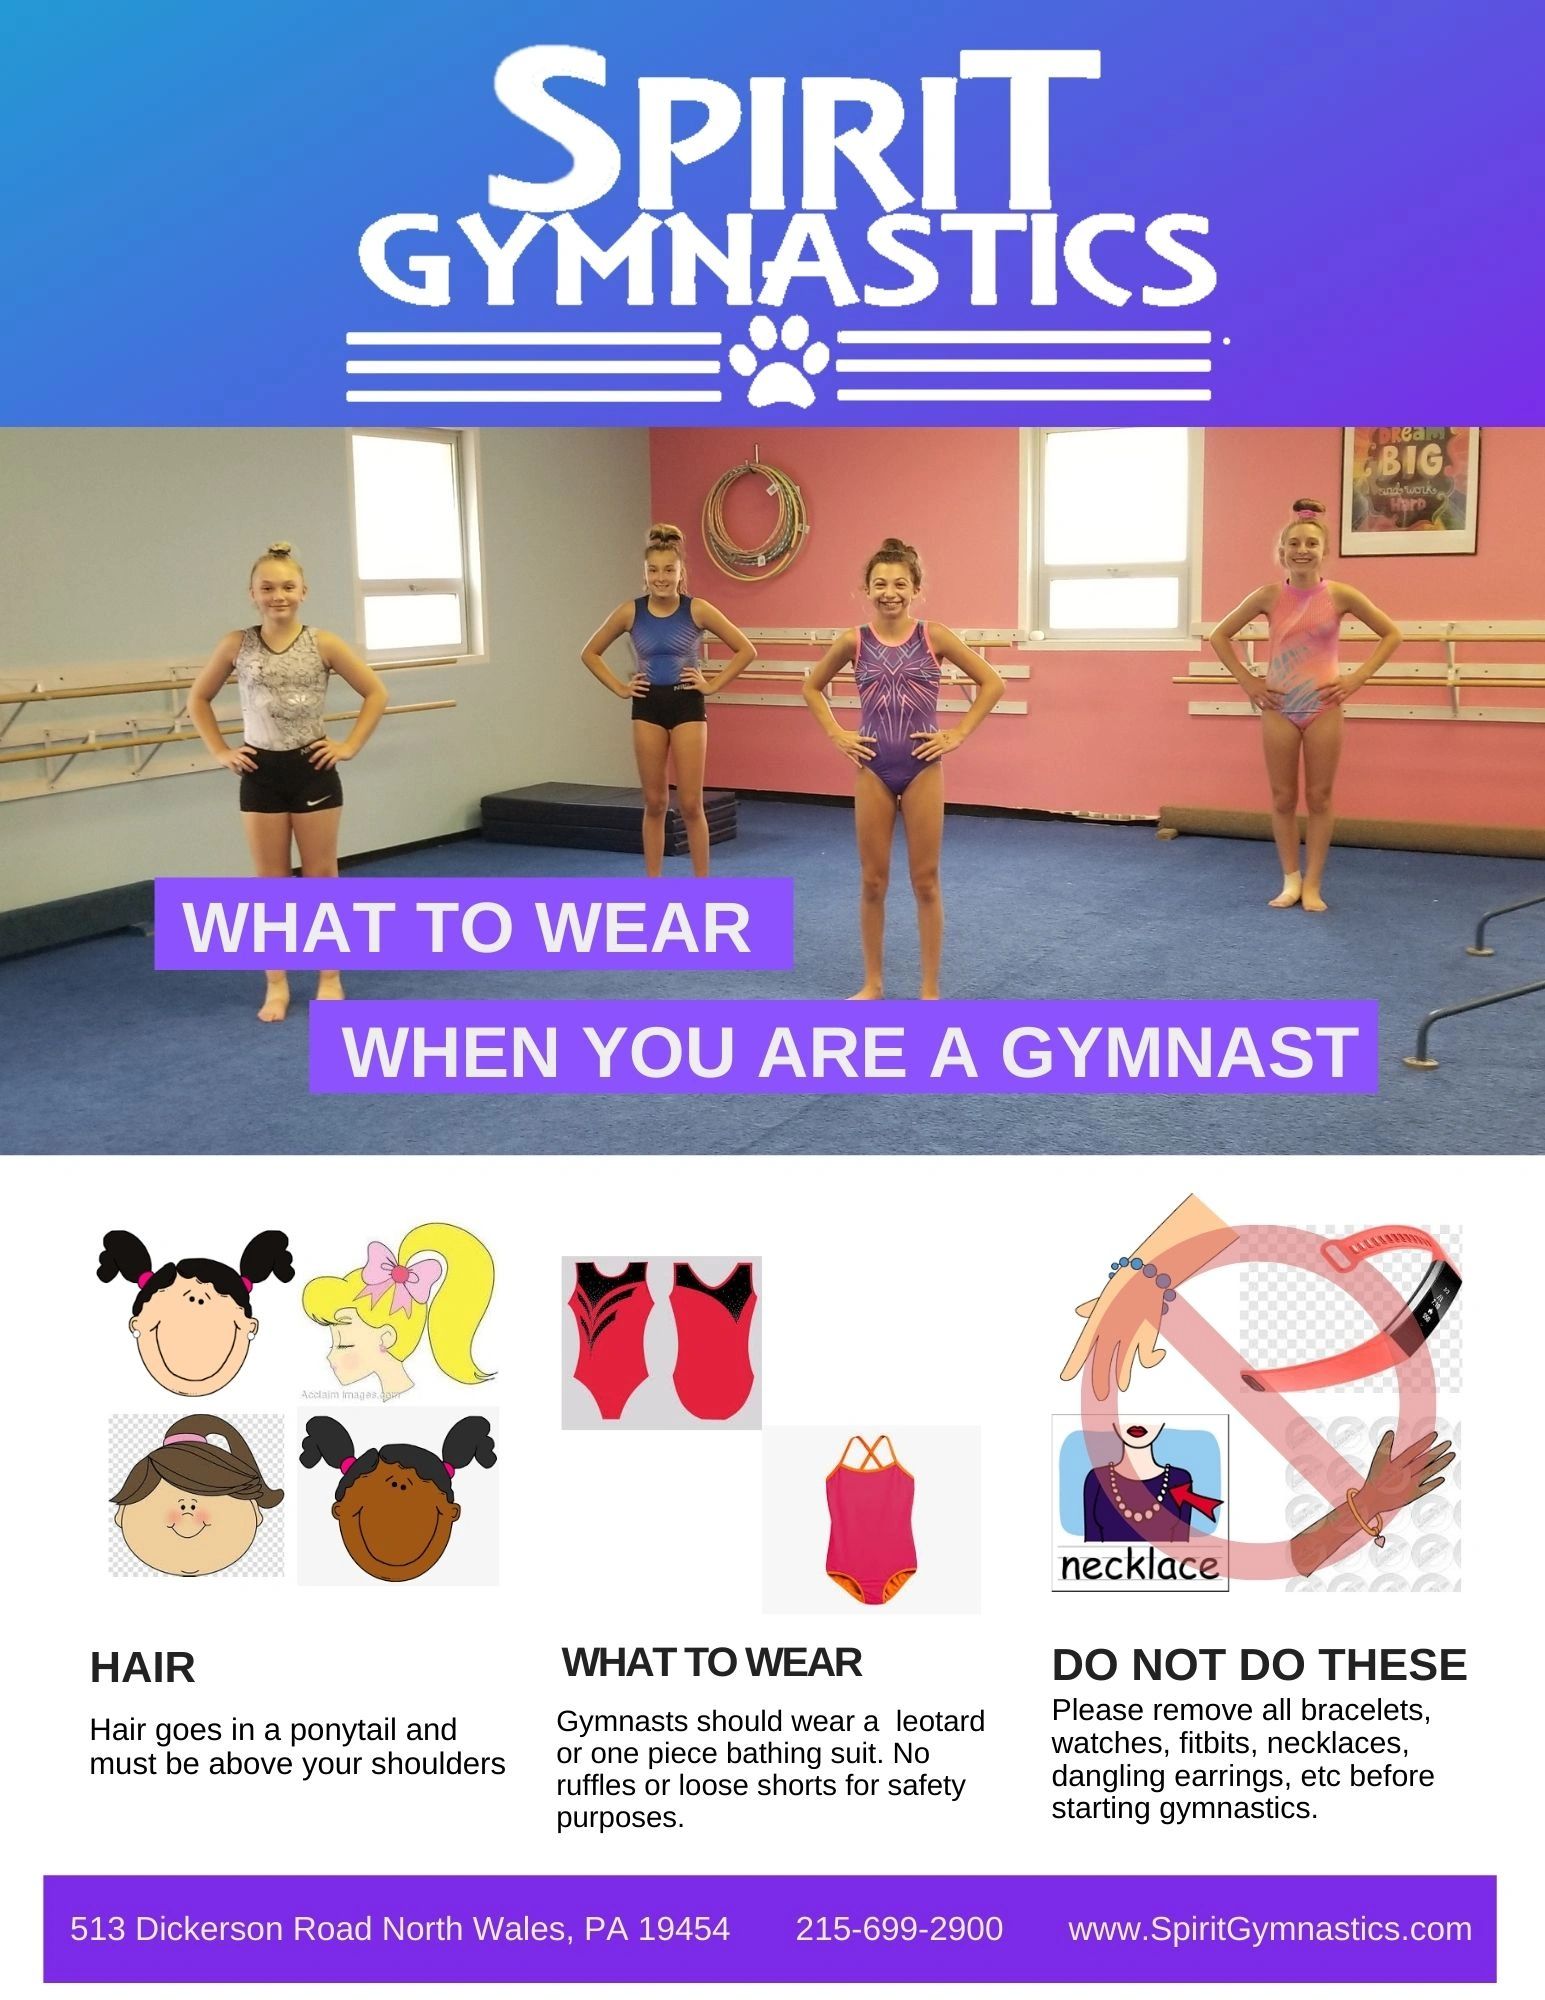 What to wear to Spirit Gymnastics